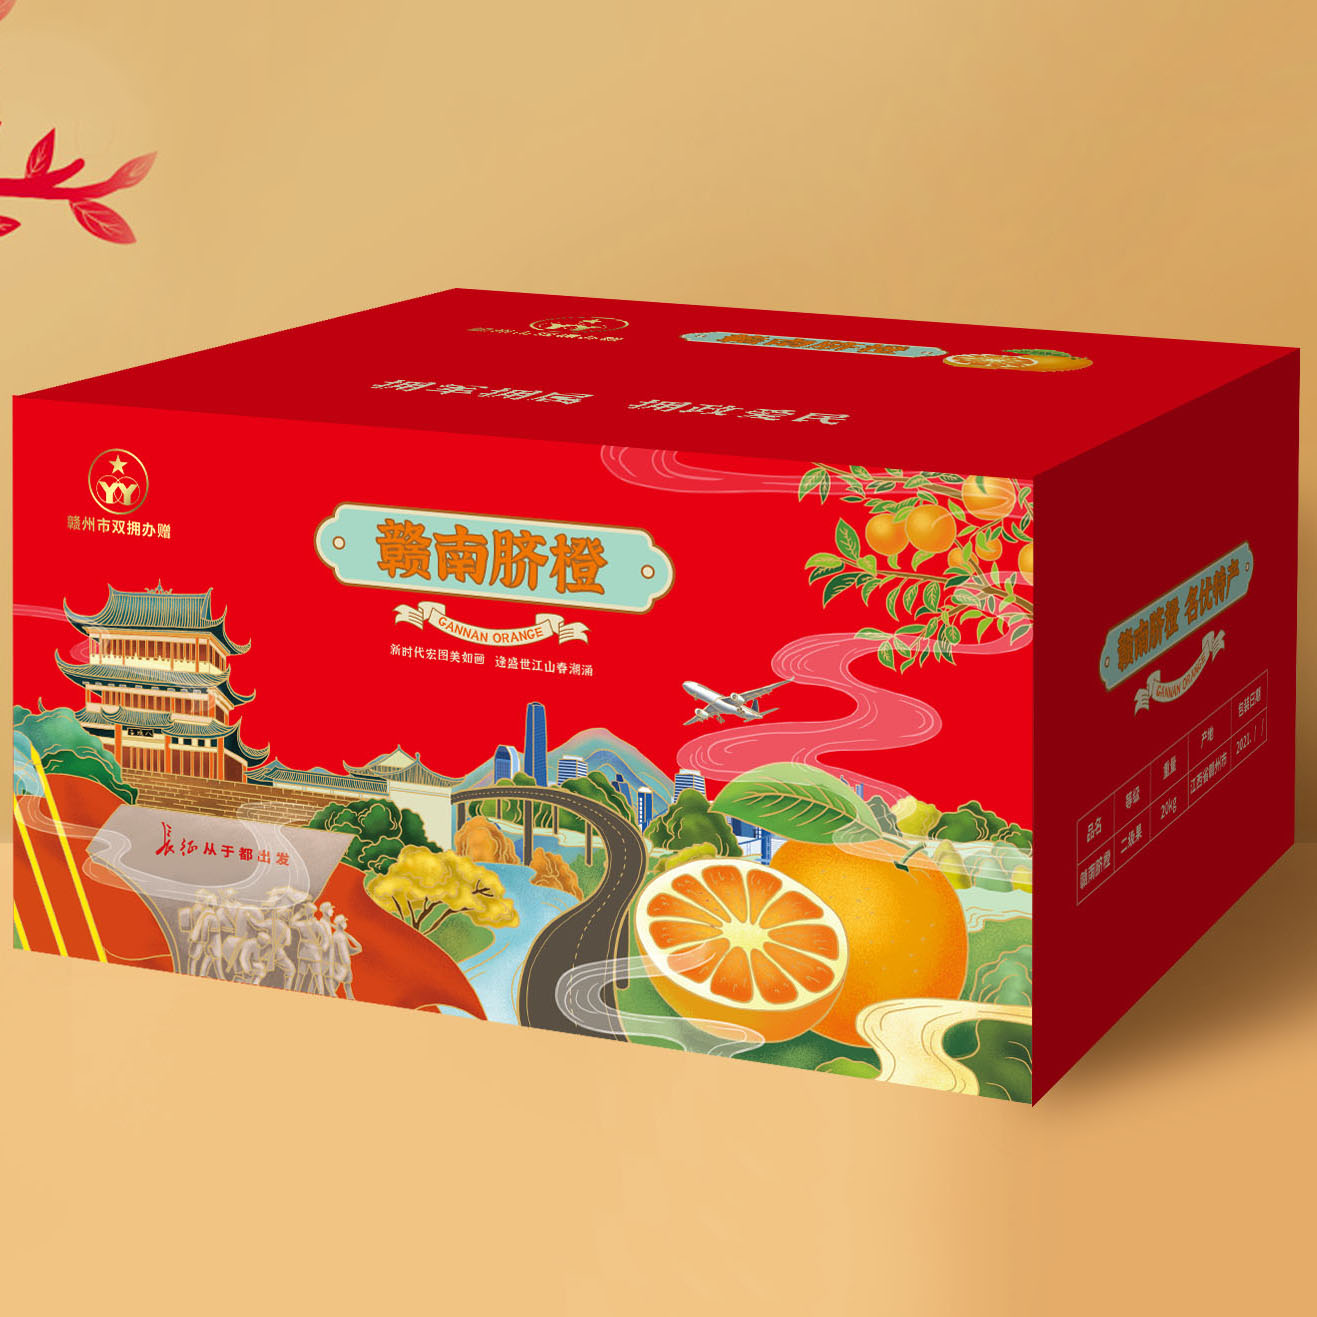 赣州丰龙水果包装箱设计